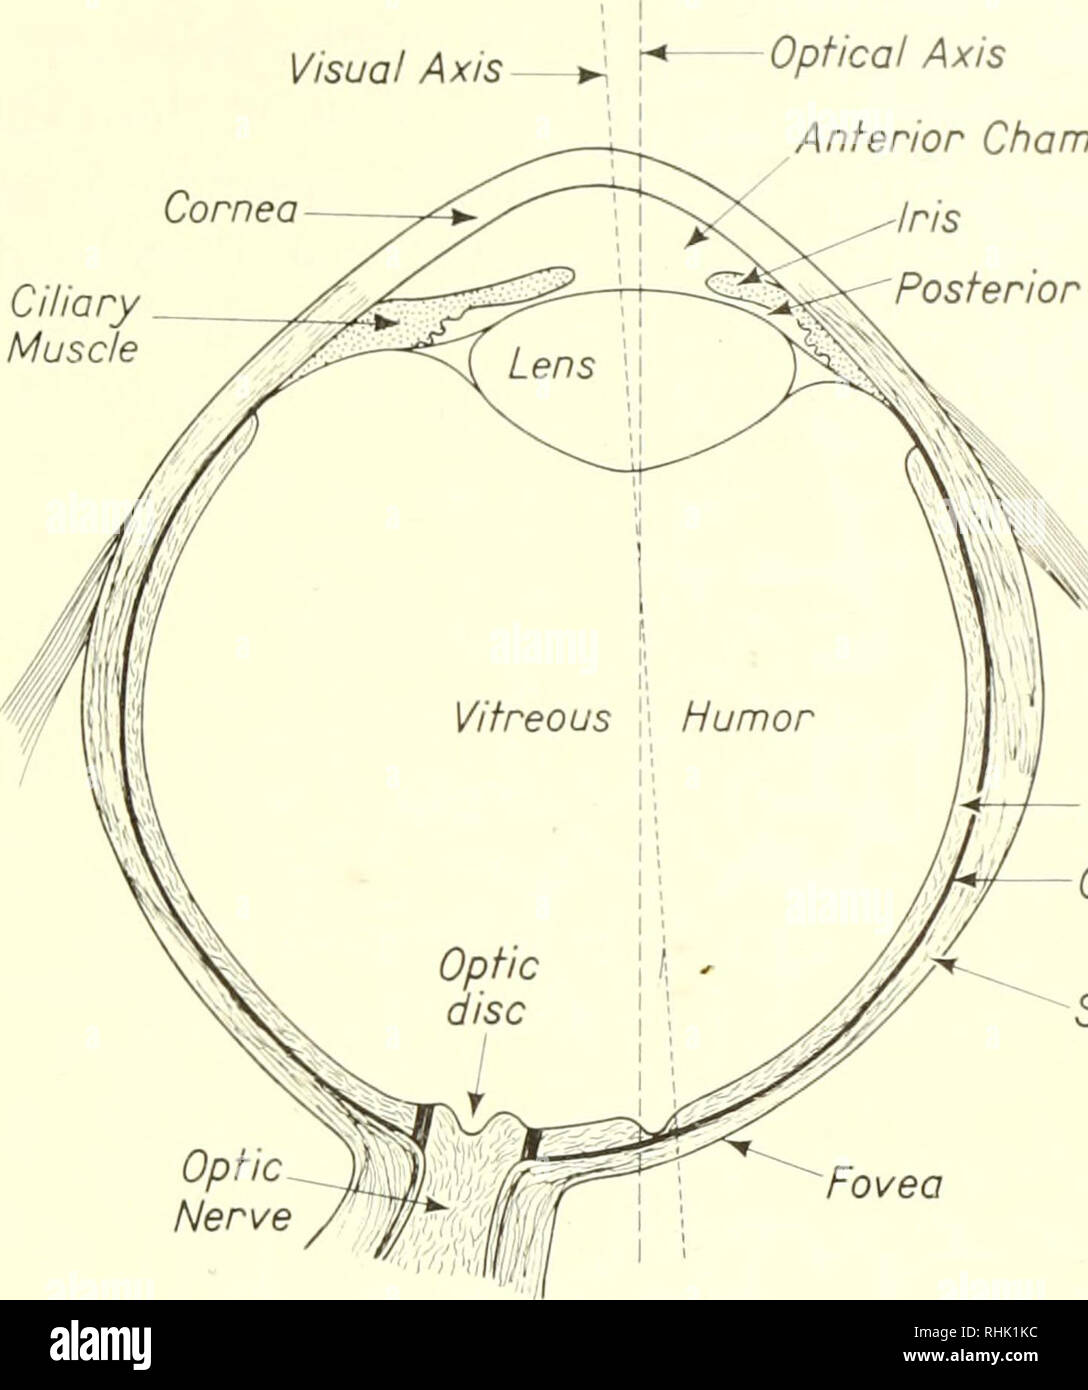 . Sciences biophysiques. La biophysique. 2 : 3/ La lumière et l'oeil 35 la troisième et dernière couche de l'oeil est la rétine. Les photorécepteurs actifs, appelés bâtonnets et cônes, sont situés dans la rétine. Il est commode de diviser la rétine en dix couches. La lumière doit passer par l'axe visuel cornée muscle ciliaire de la chambre antérieure de l'axe optique chambre postérieure de l'Iris . Couche choroïde rétine Sclère Nerf optique Fovéa Figure 3. L'œil. Après A. A. Maximow et W. Bloom, Manuel d'Histologie (Philadelphia : W. B. Saunders Company, 1957). Huit de ces avant d'atteindre les bâtonnets et les cônes situé dans la Banque D'Images